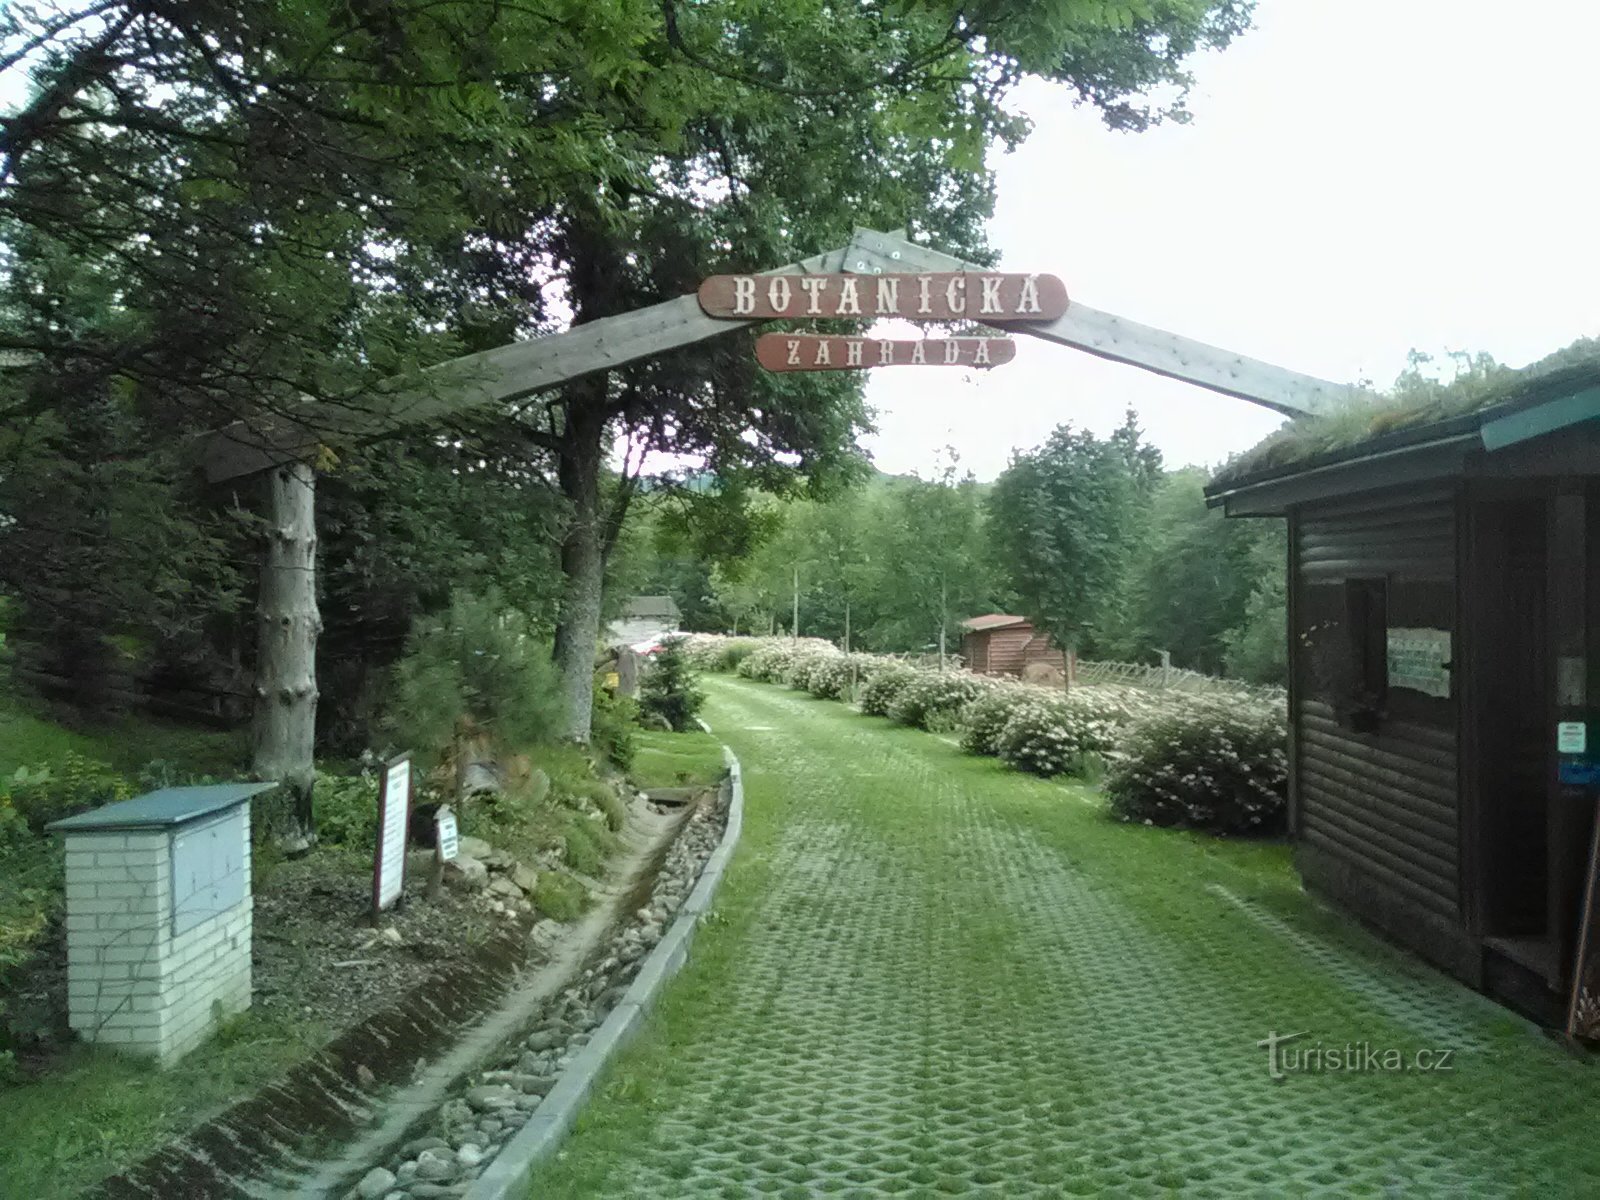 Entrance to the botanical garden